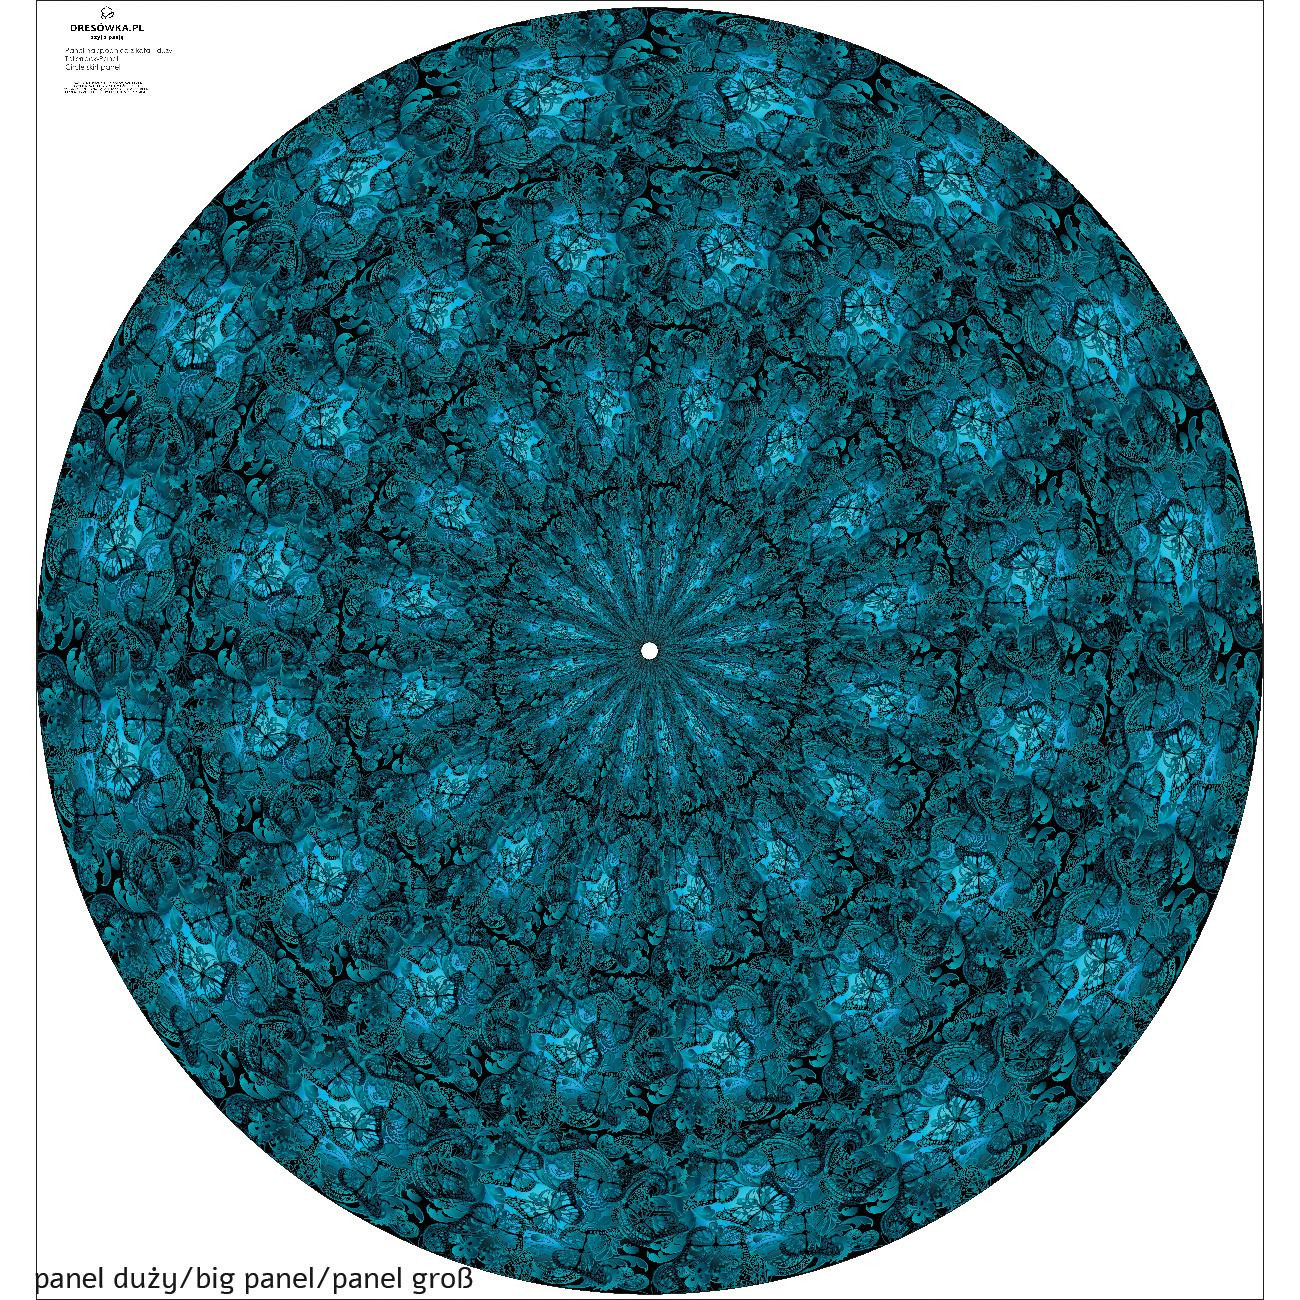 LACE BUTTERFLIES / blue - circle skirt panel 